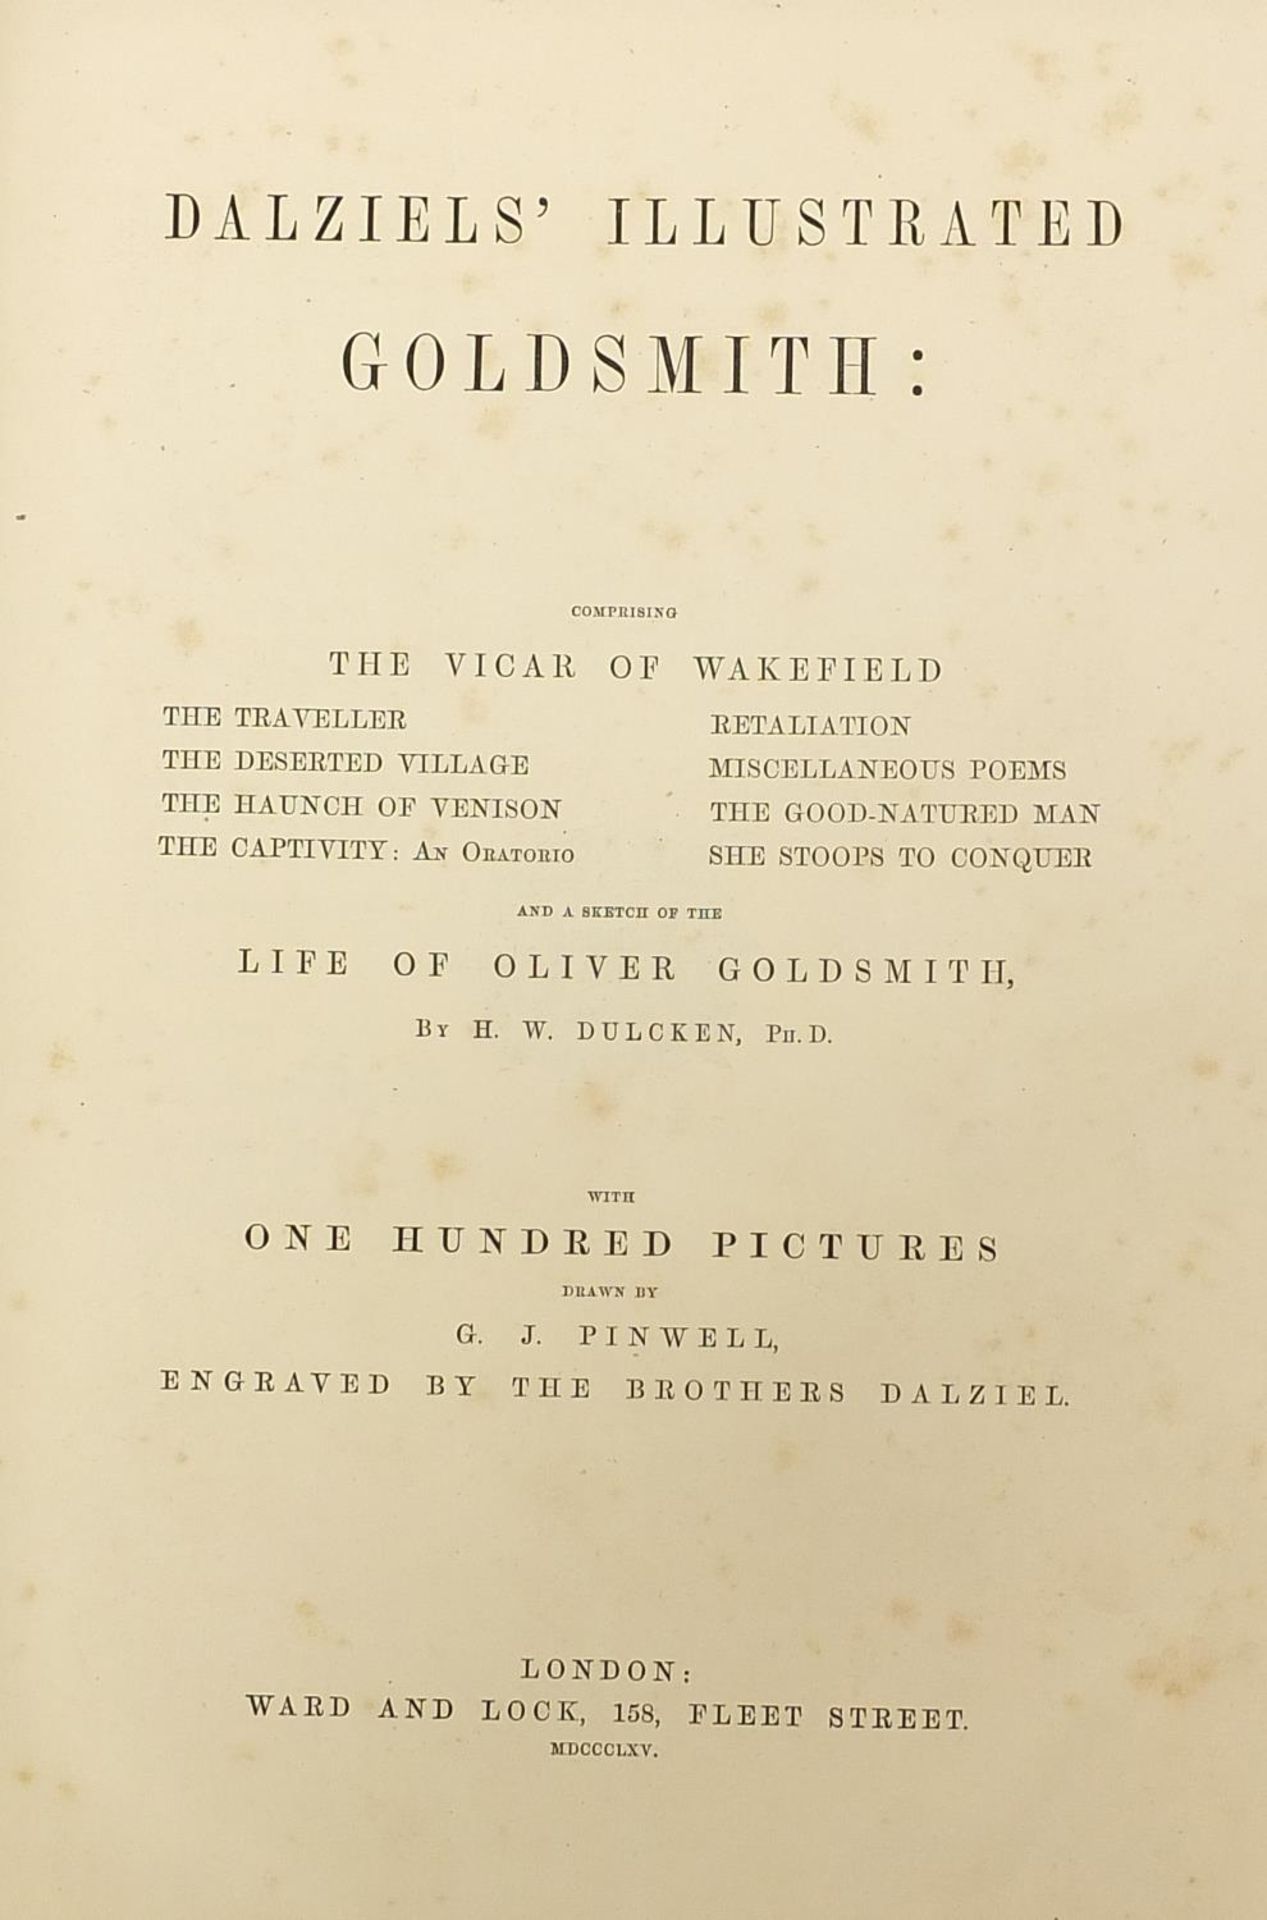 Dalziels Illustrated Goldsmith, Hardback book published Ward & Lock 1865 - Image 2 of 3